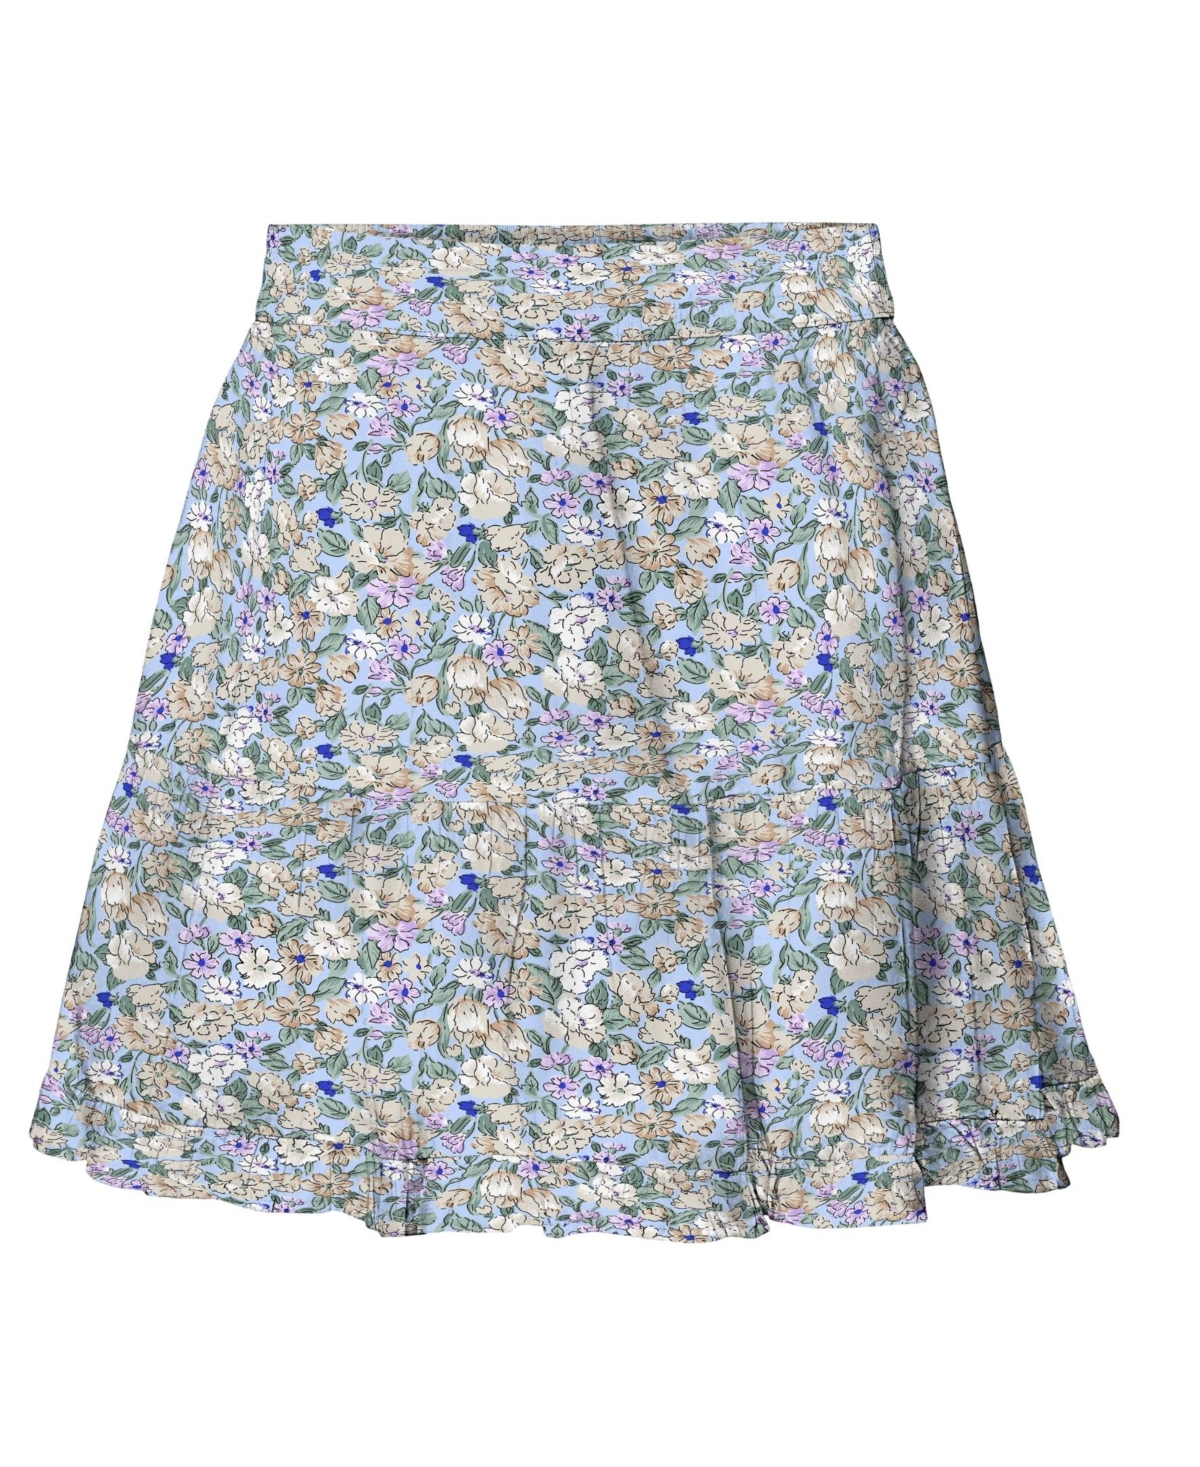 Rekvisitter fremsætte Tilfredsstille Vero Moda Women's Joa High Waisted Short Skirt - Macy's